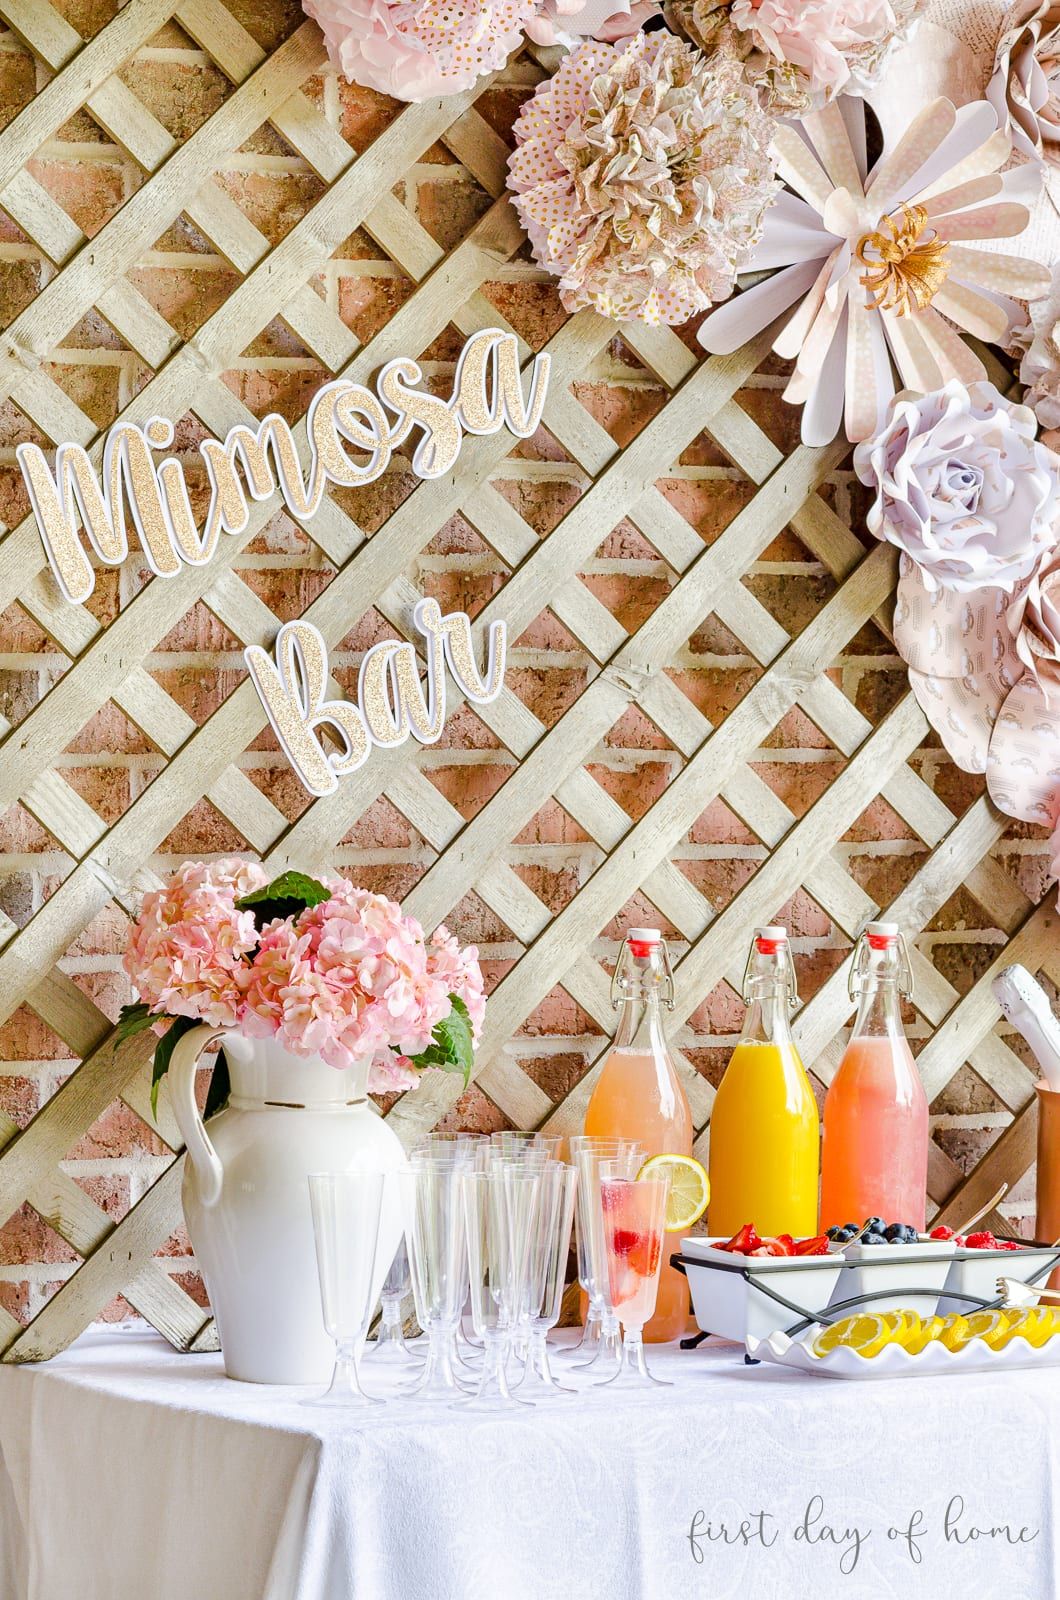 Mimosa Bar Ideas - Sweetheart Setup & Theme - Kelley Nan